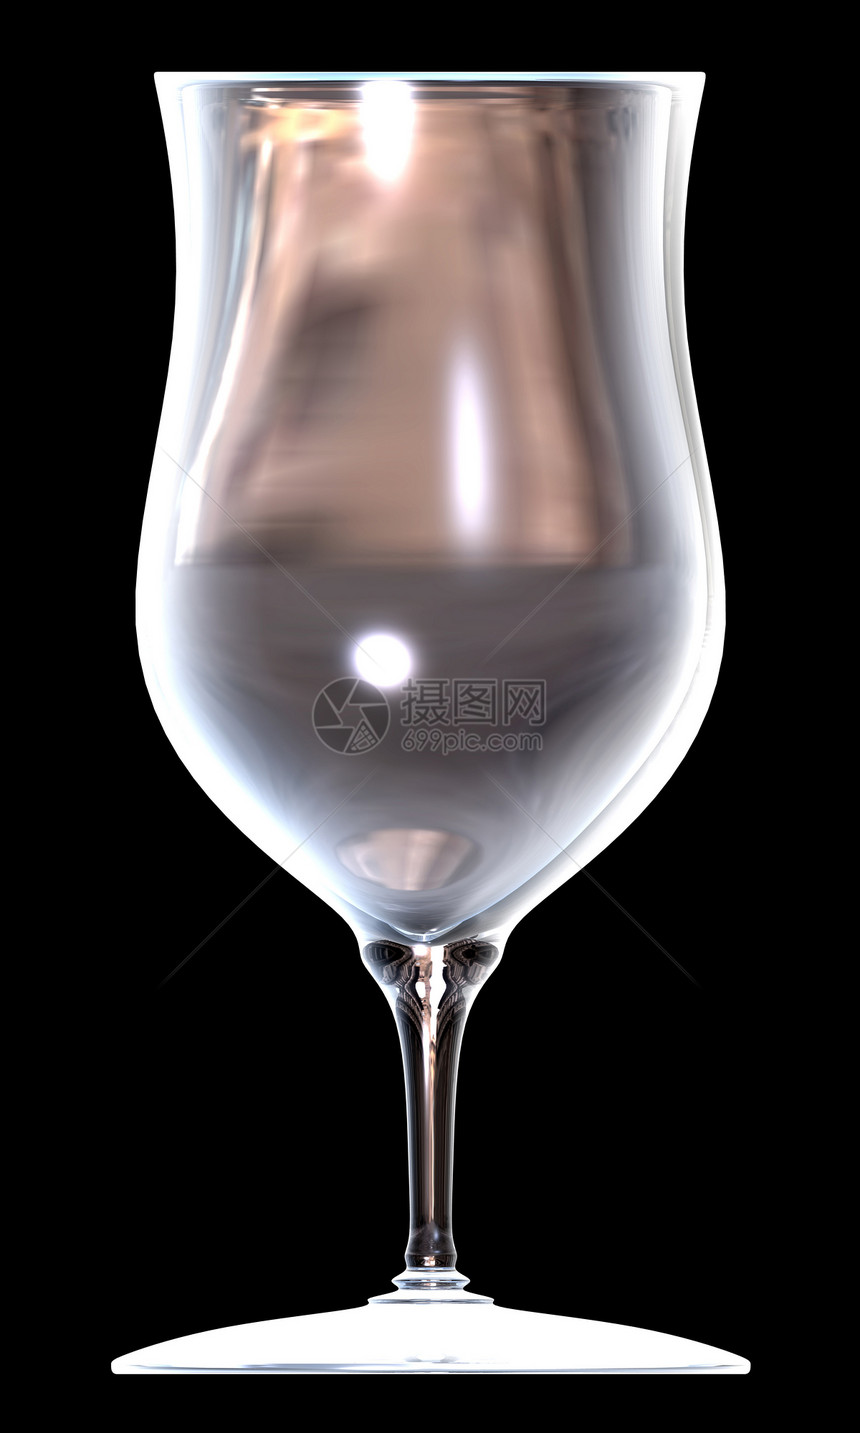 黑色背景上的玻璃杯红色三重奏液体生活藤蔓骨牌庆典派对饮食玻璃图片